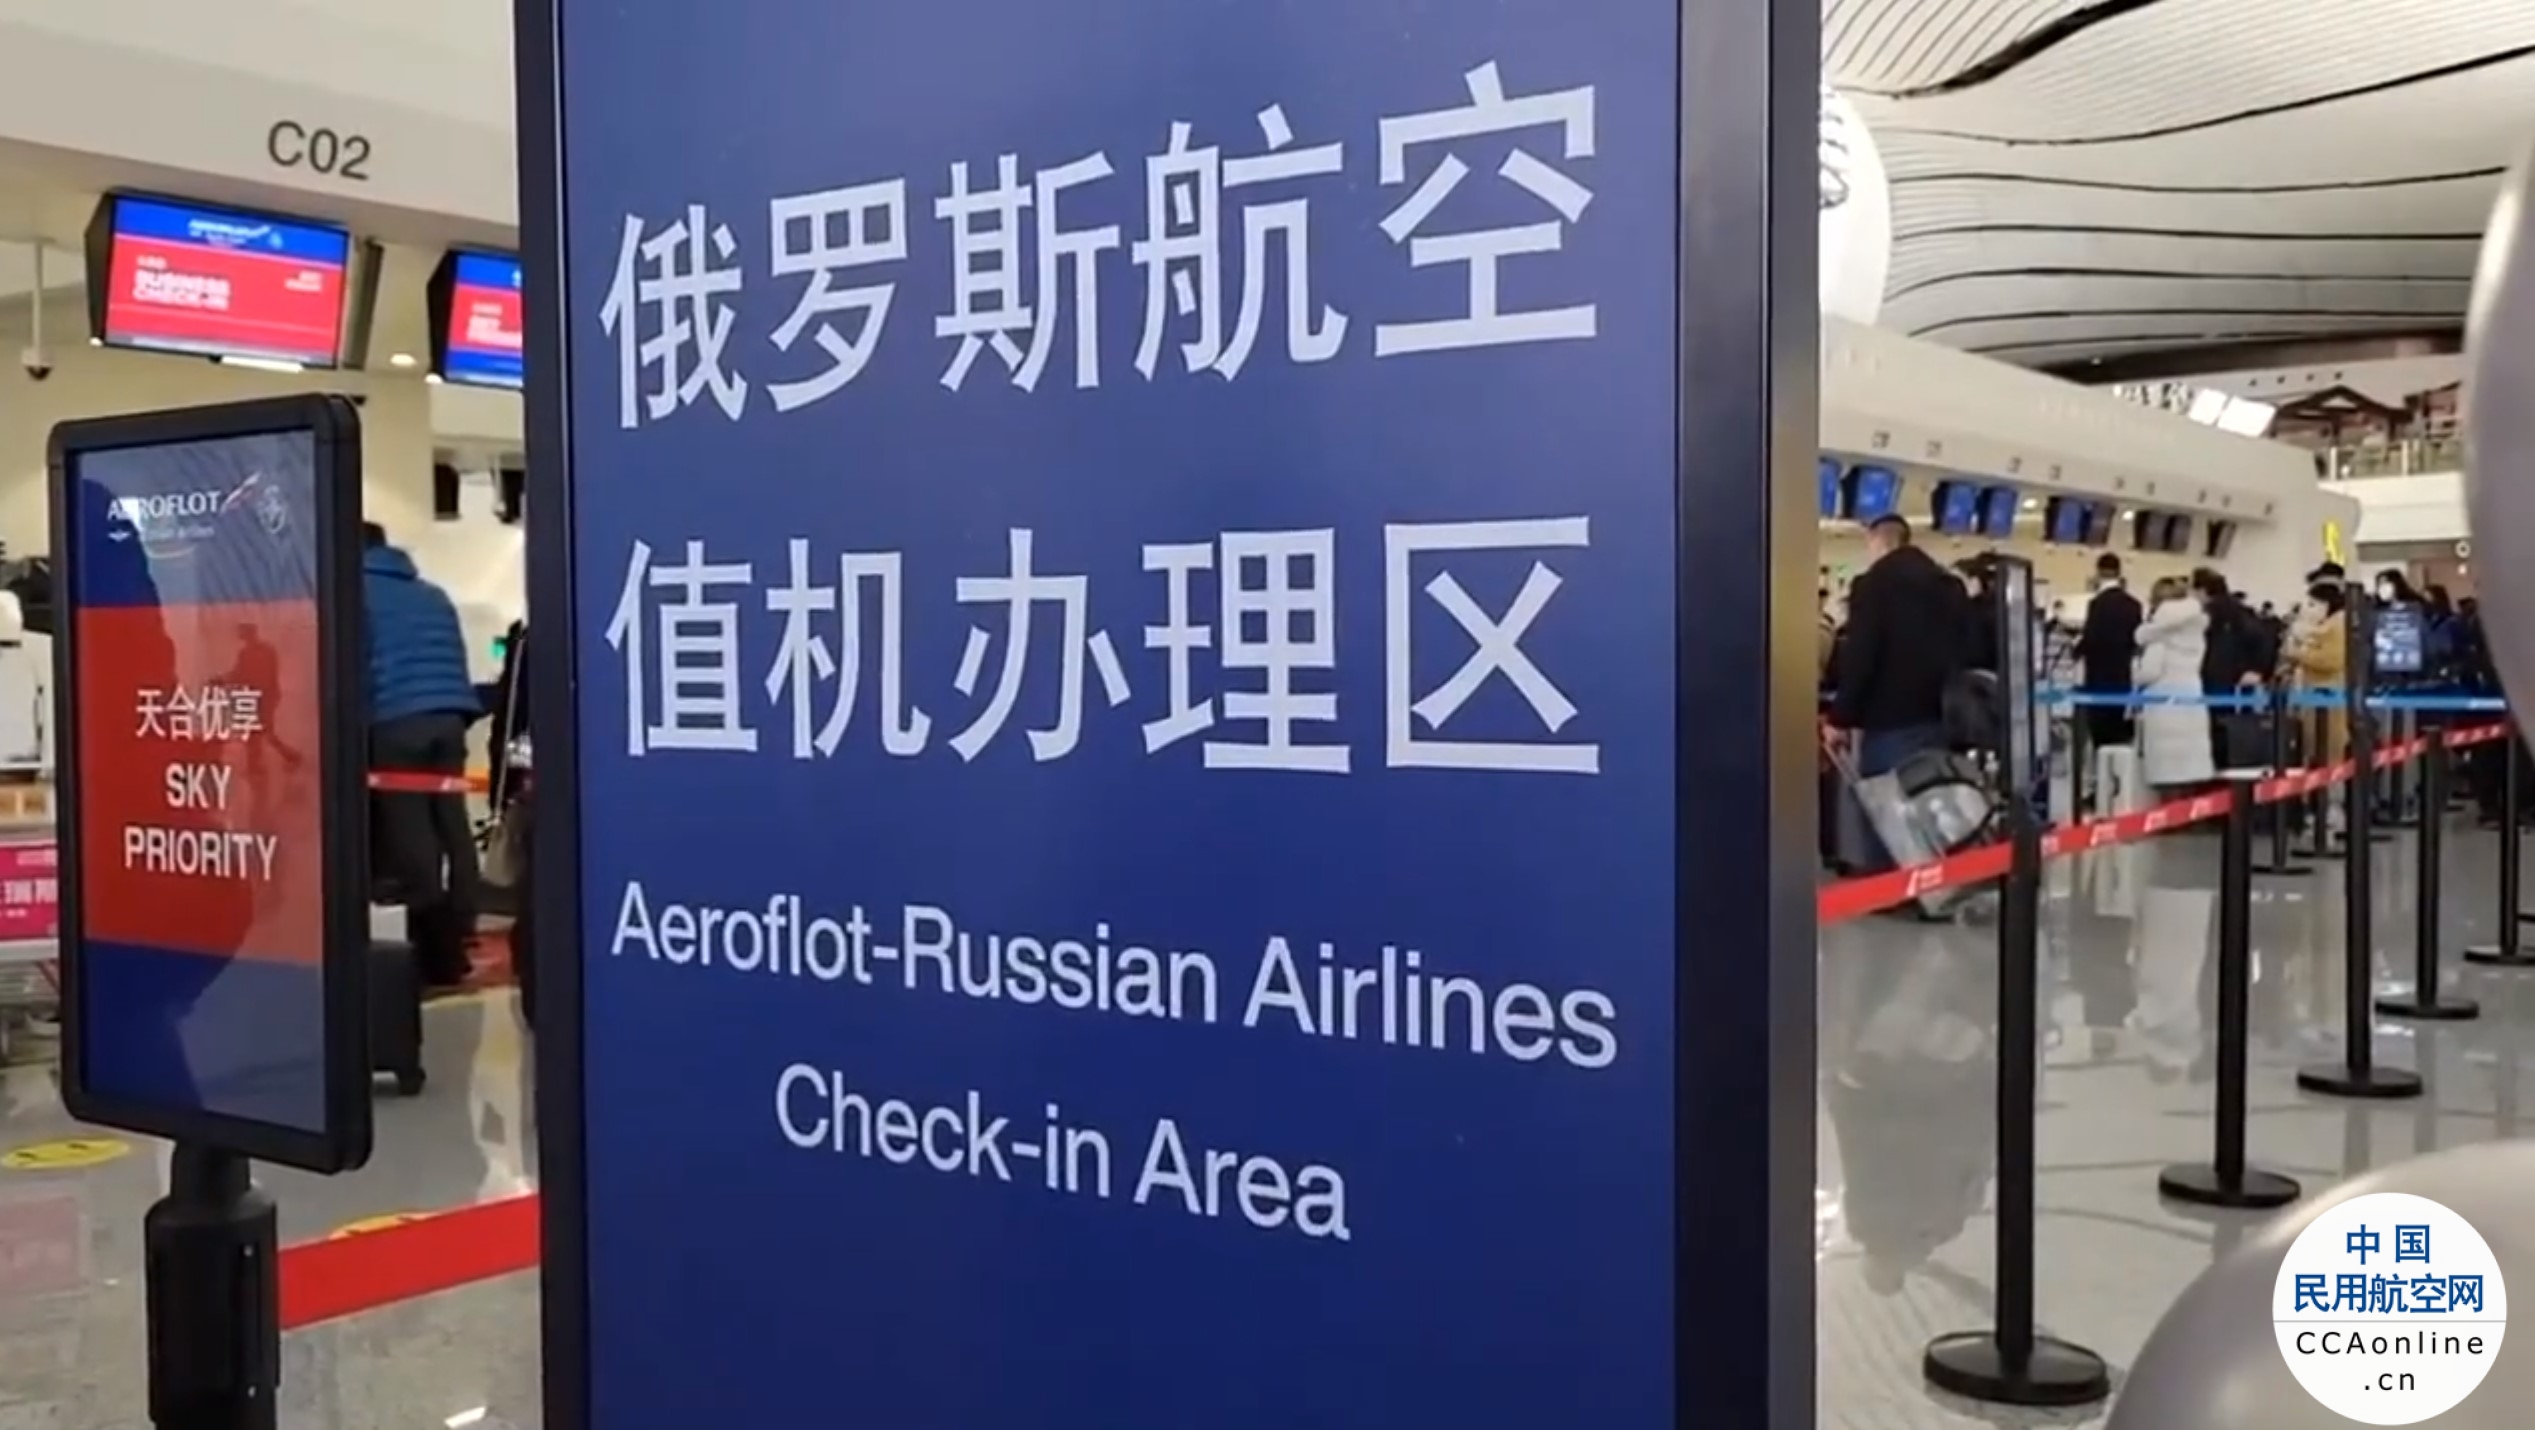 俄航首班赴北京大兴机场航班飞抵，大兴机场将开通多条国际航线